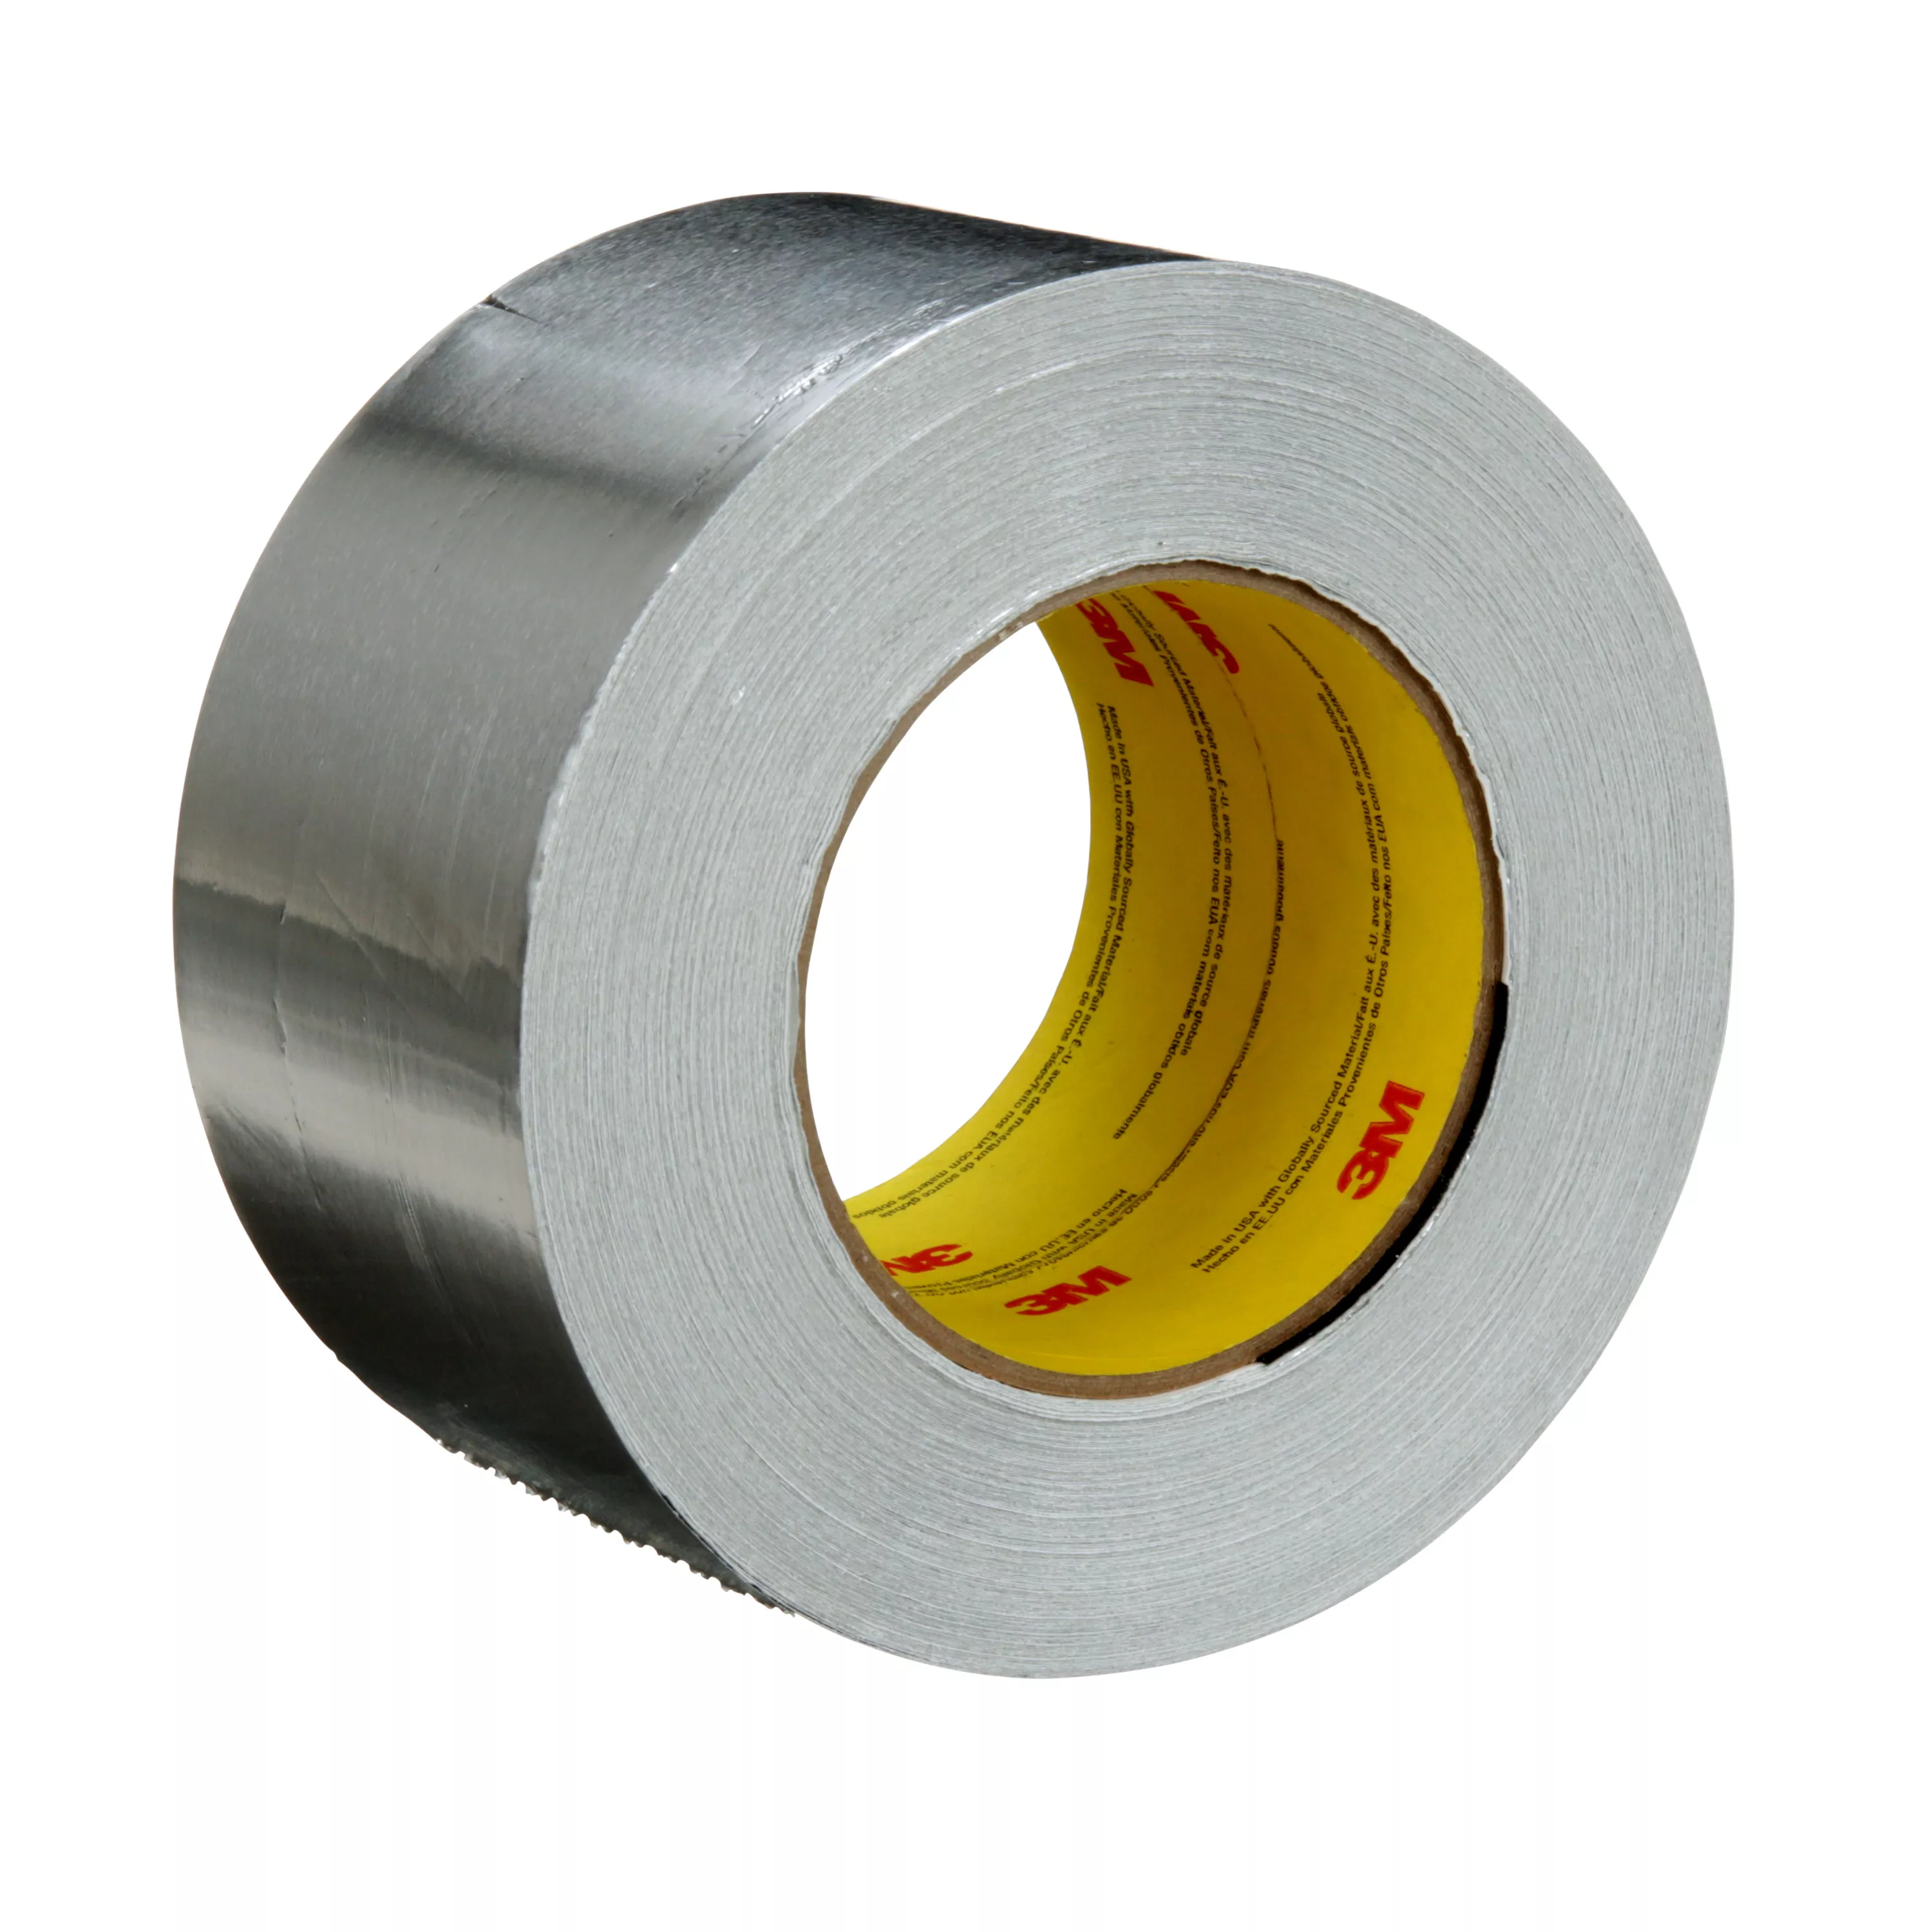 3M™ Aluminum Foil Tape 2C120, Silver, 72 mm x 45.7 m, 1.8 mil, 16
Rolls/Case